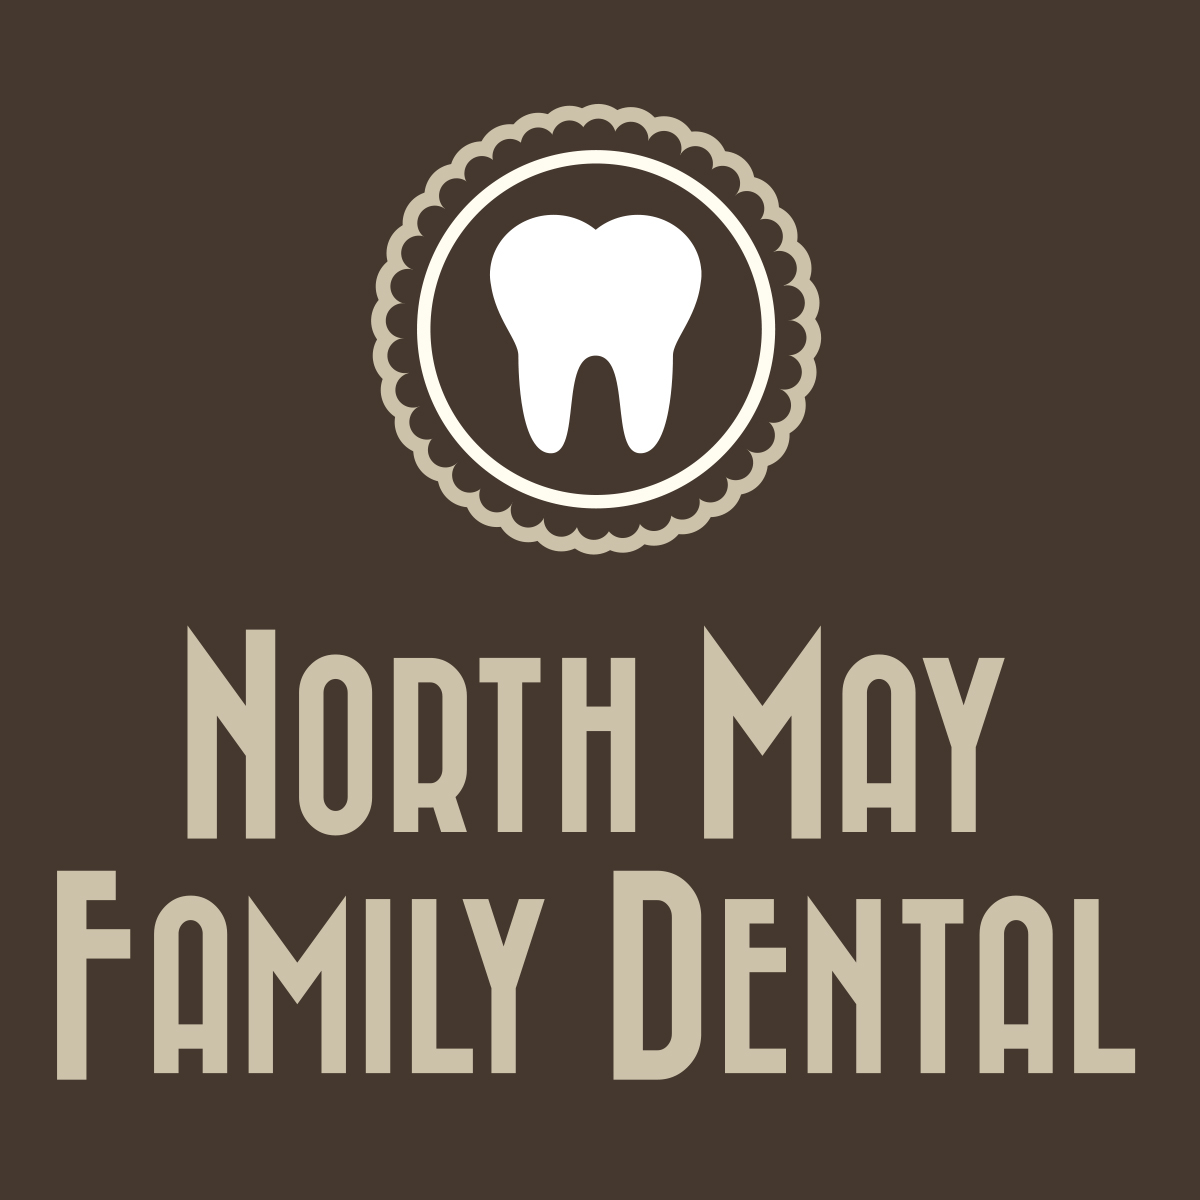 North May Family Dental Logo